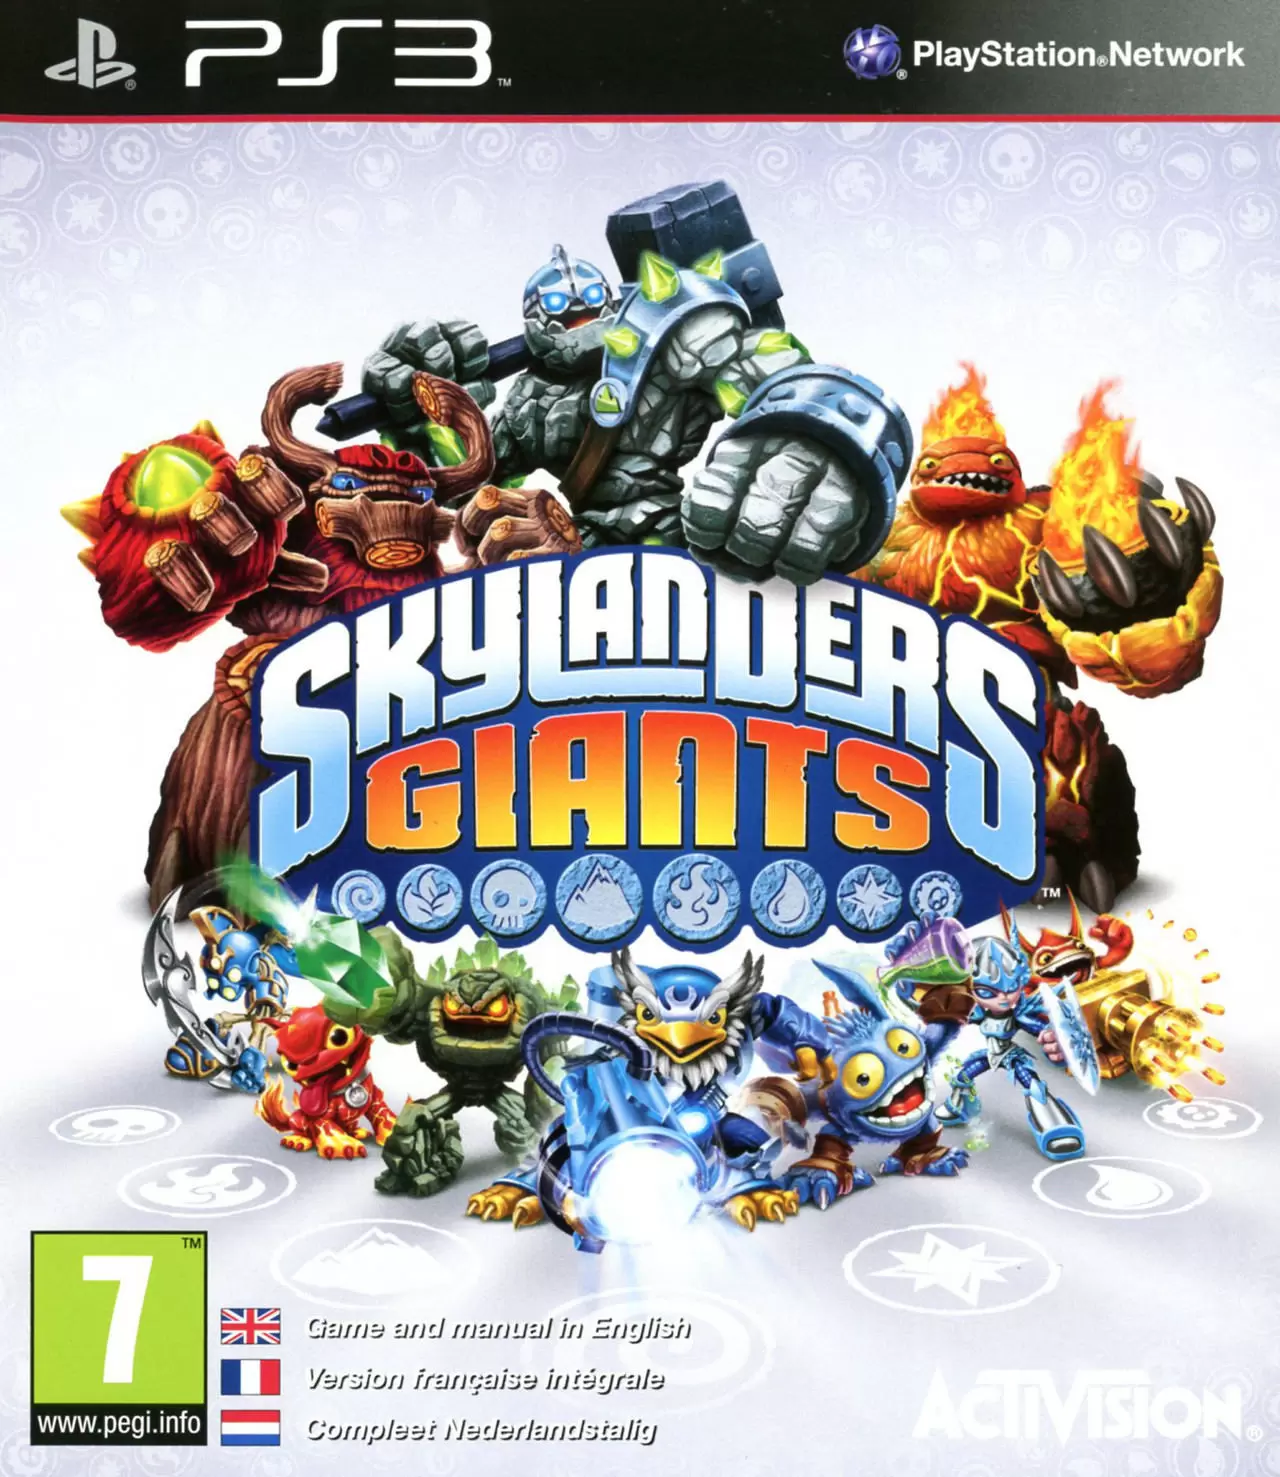 PS3 Games - Skylanders Giants